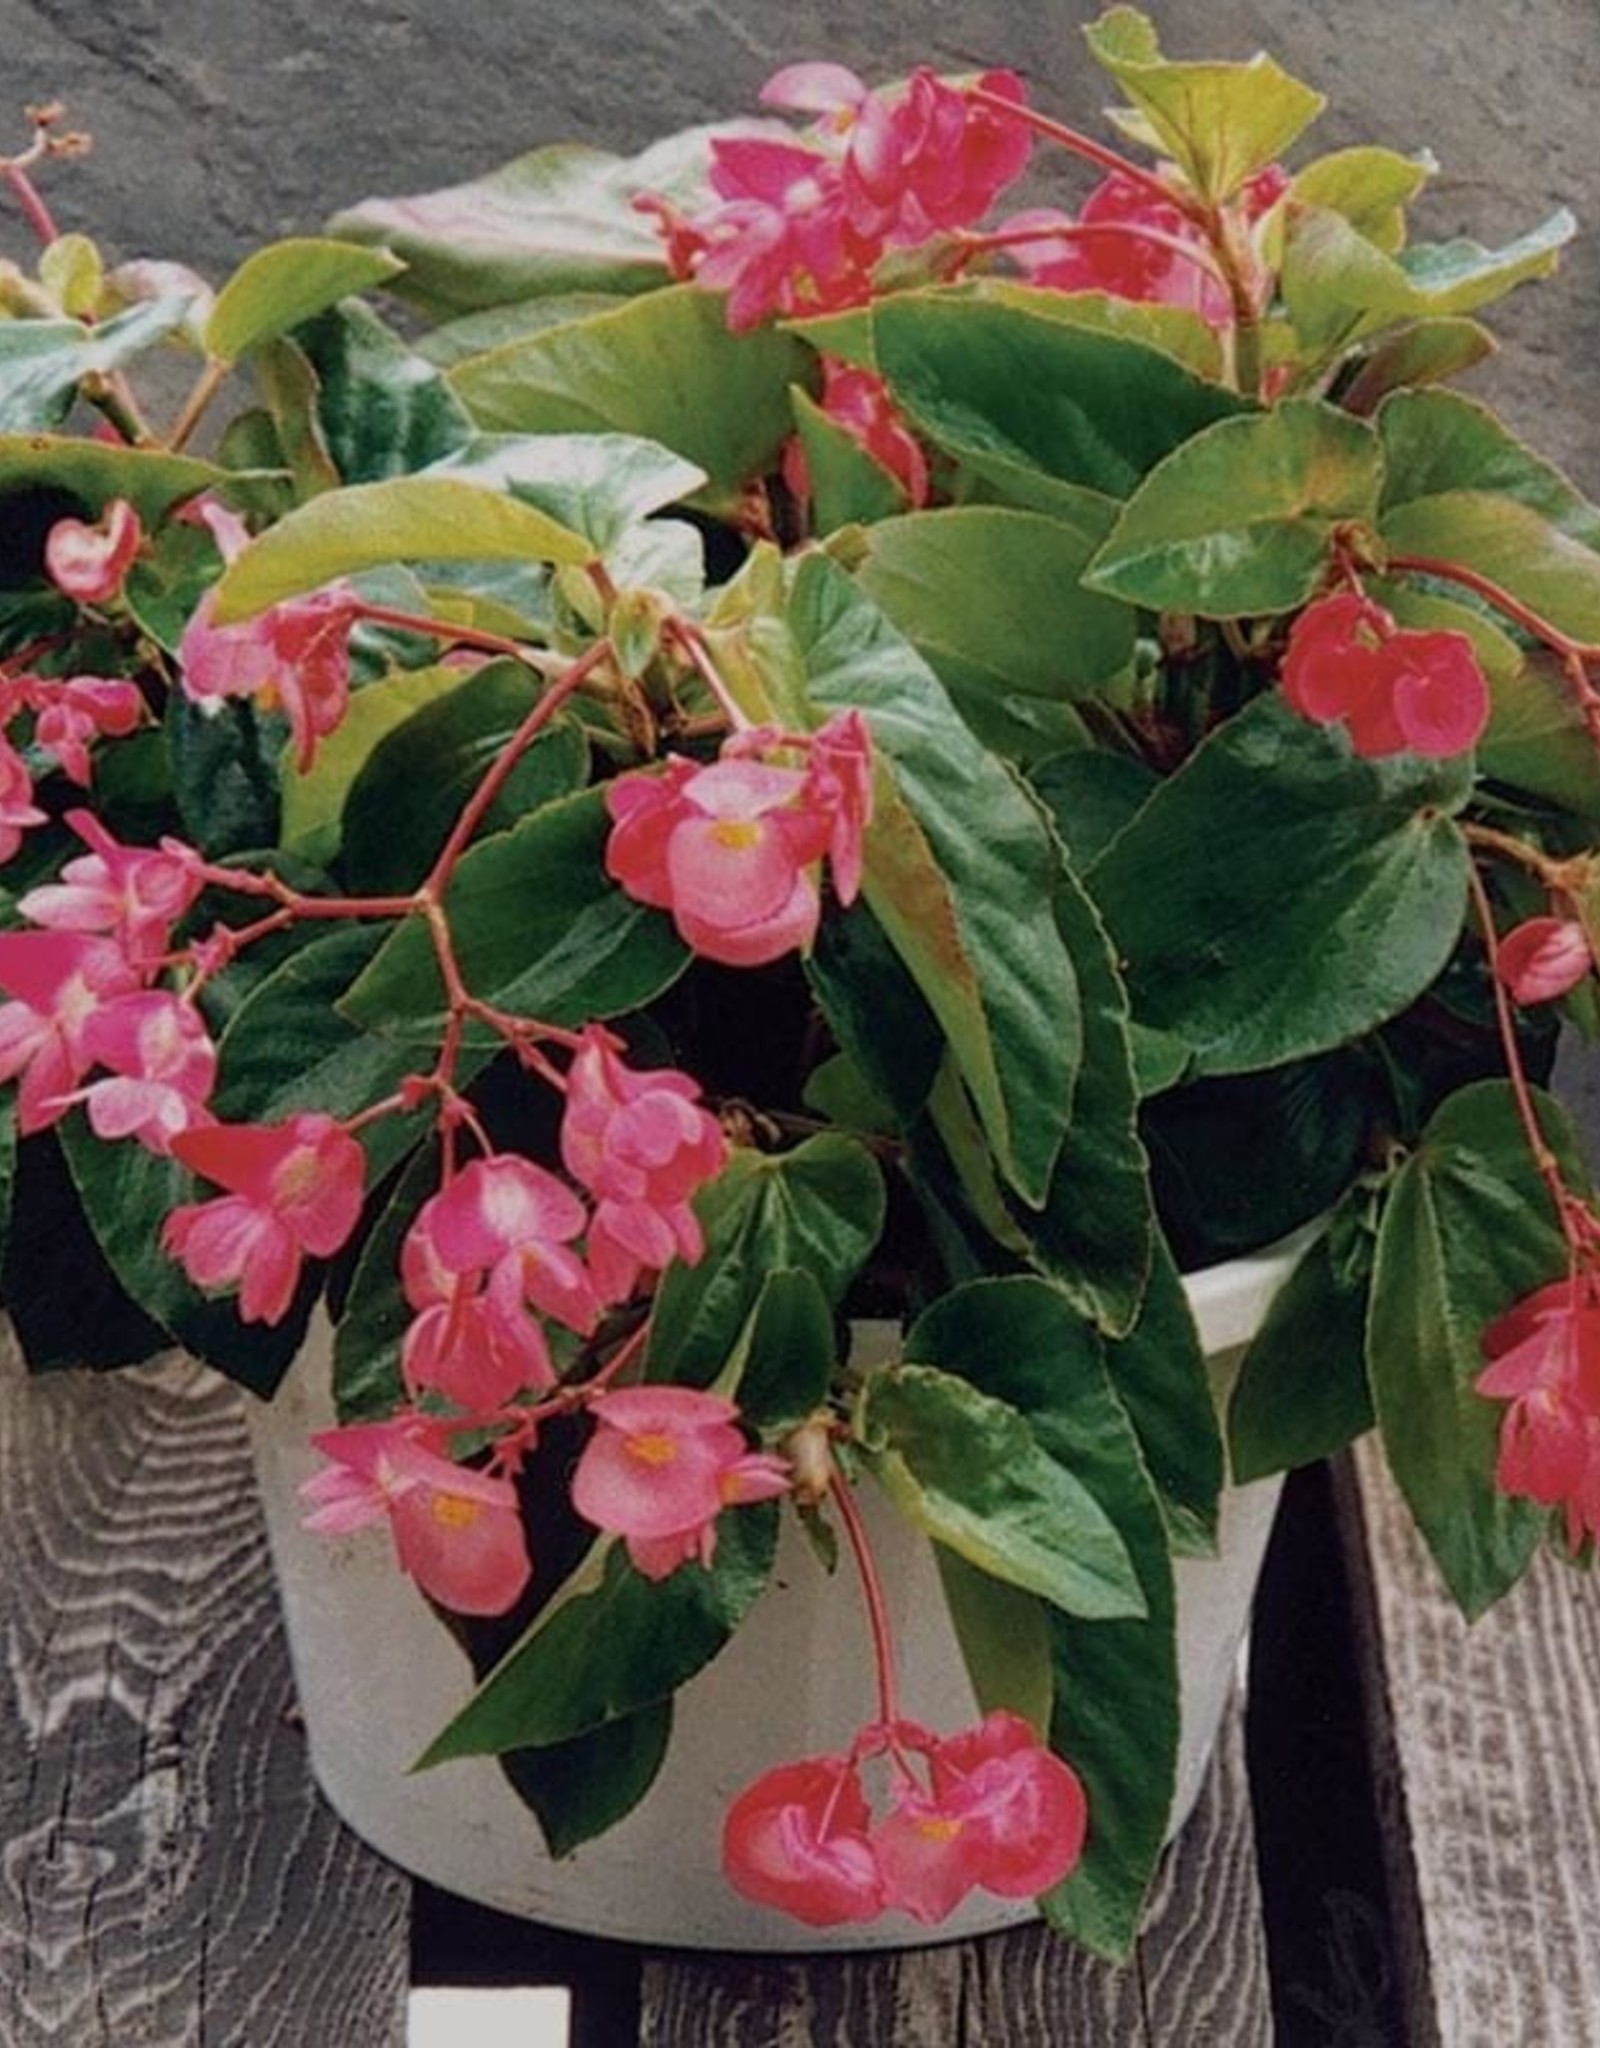 Seasonal Hanging Basket: Begonia Dragonwing Pink 10" Plastic